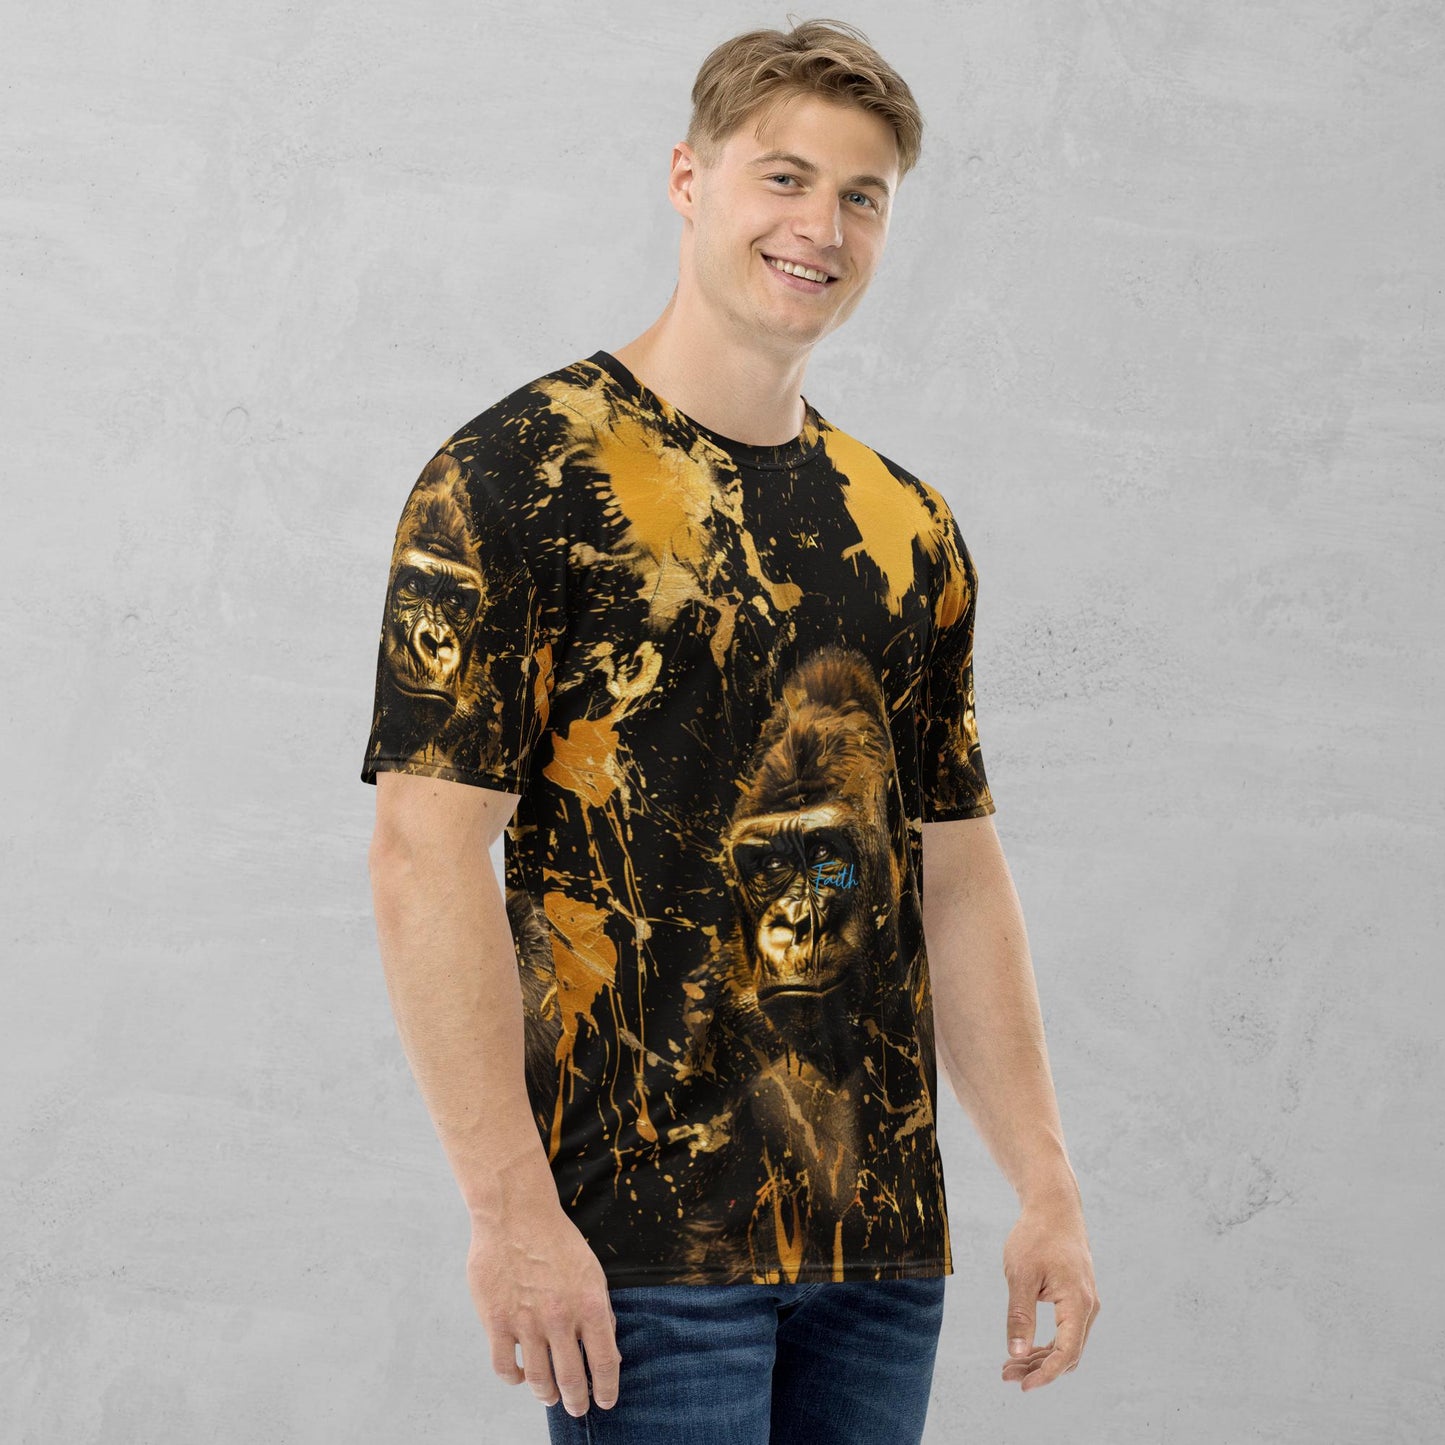 J.A Faith Gold Gorilla- Men's t-shirt